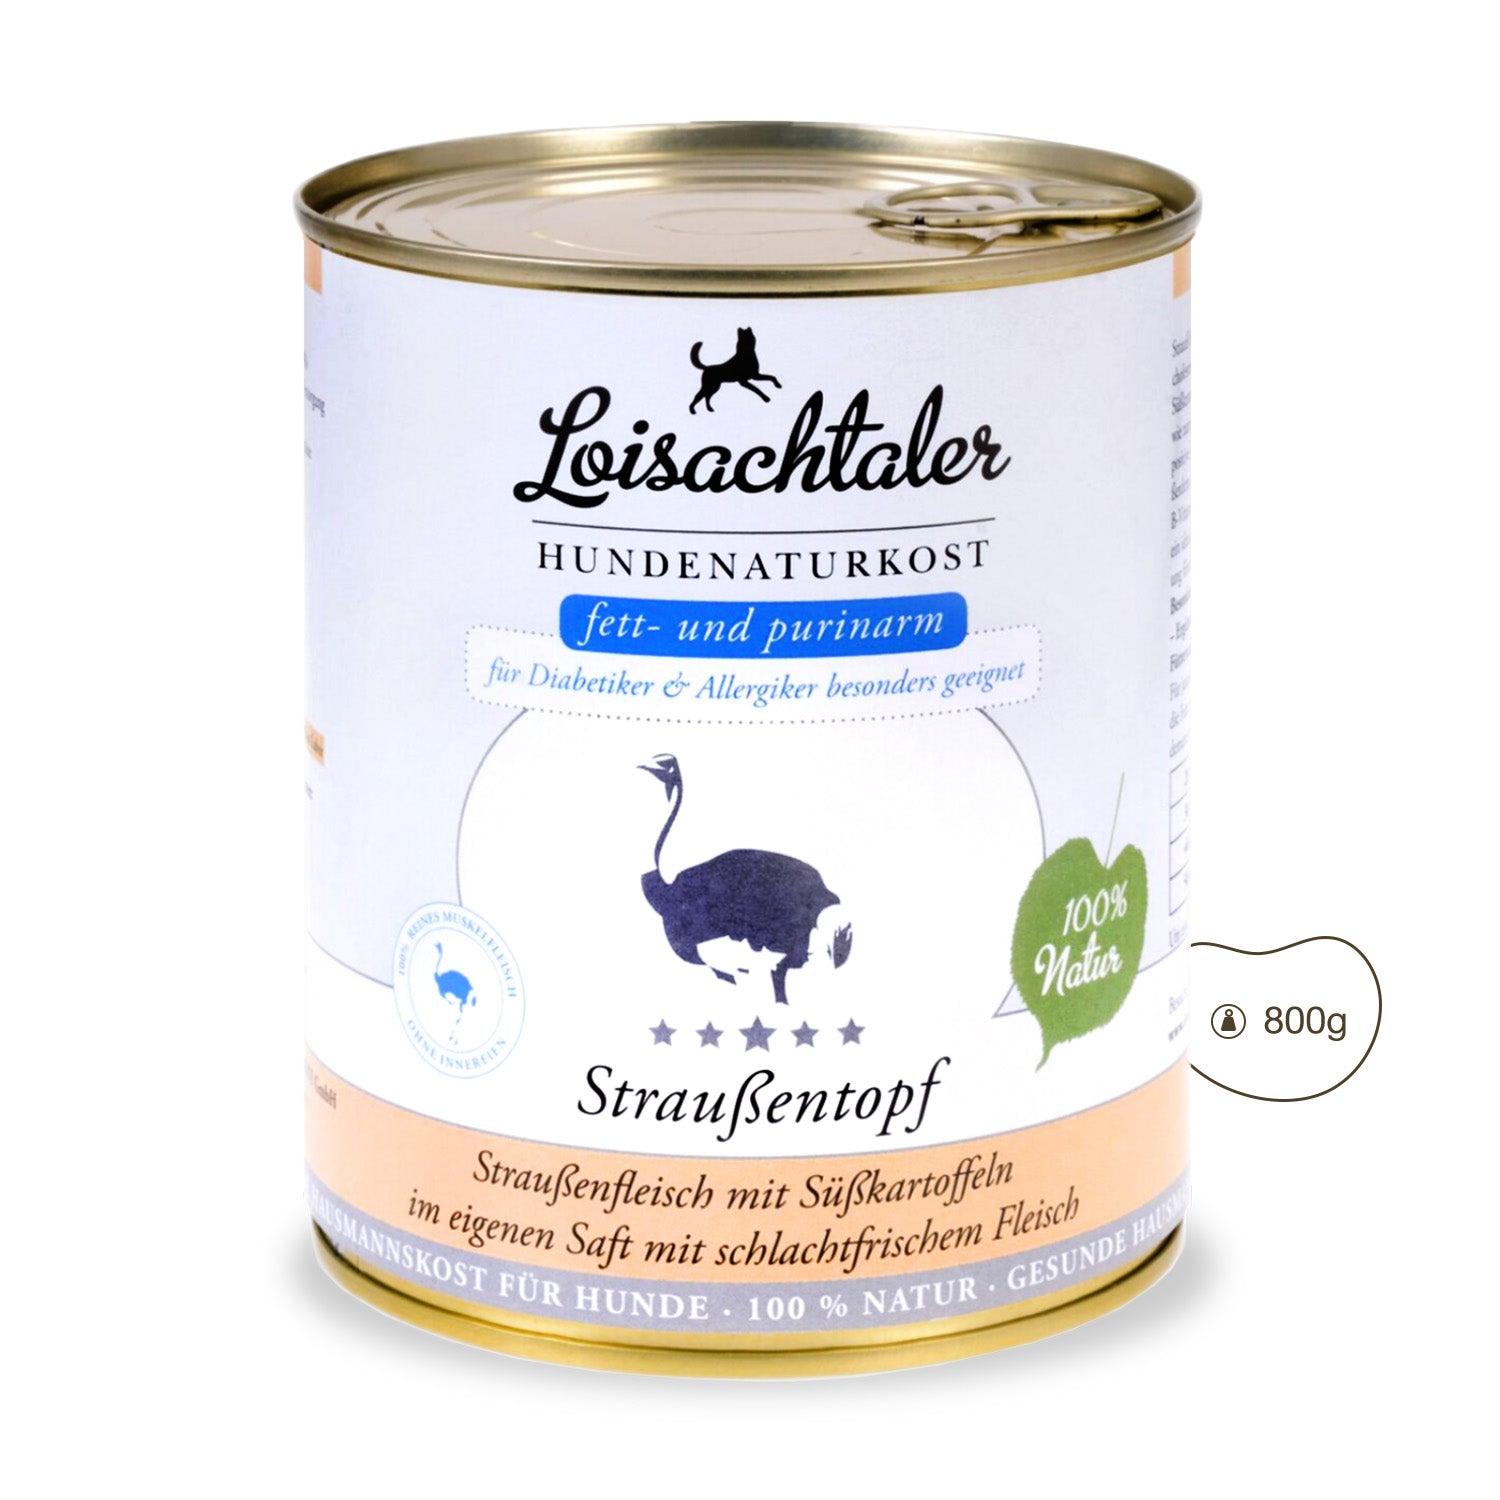 Der Loisachtaler - Straussentopf von PetsFinest ist in der 800 g Hundefutterdose erhältlich.